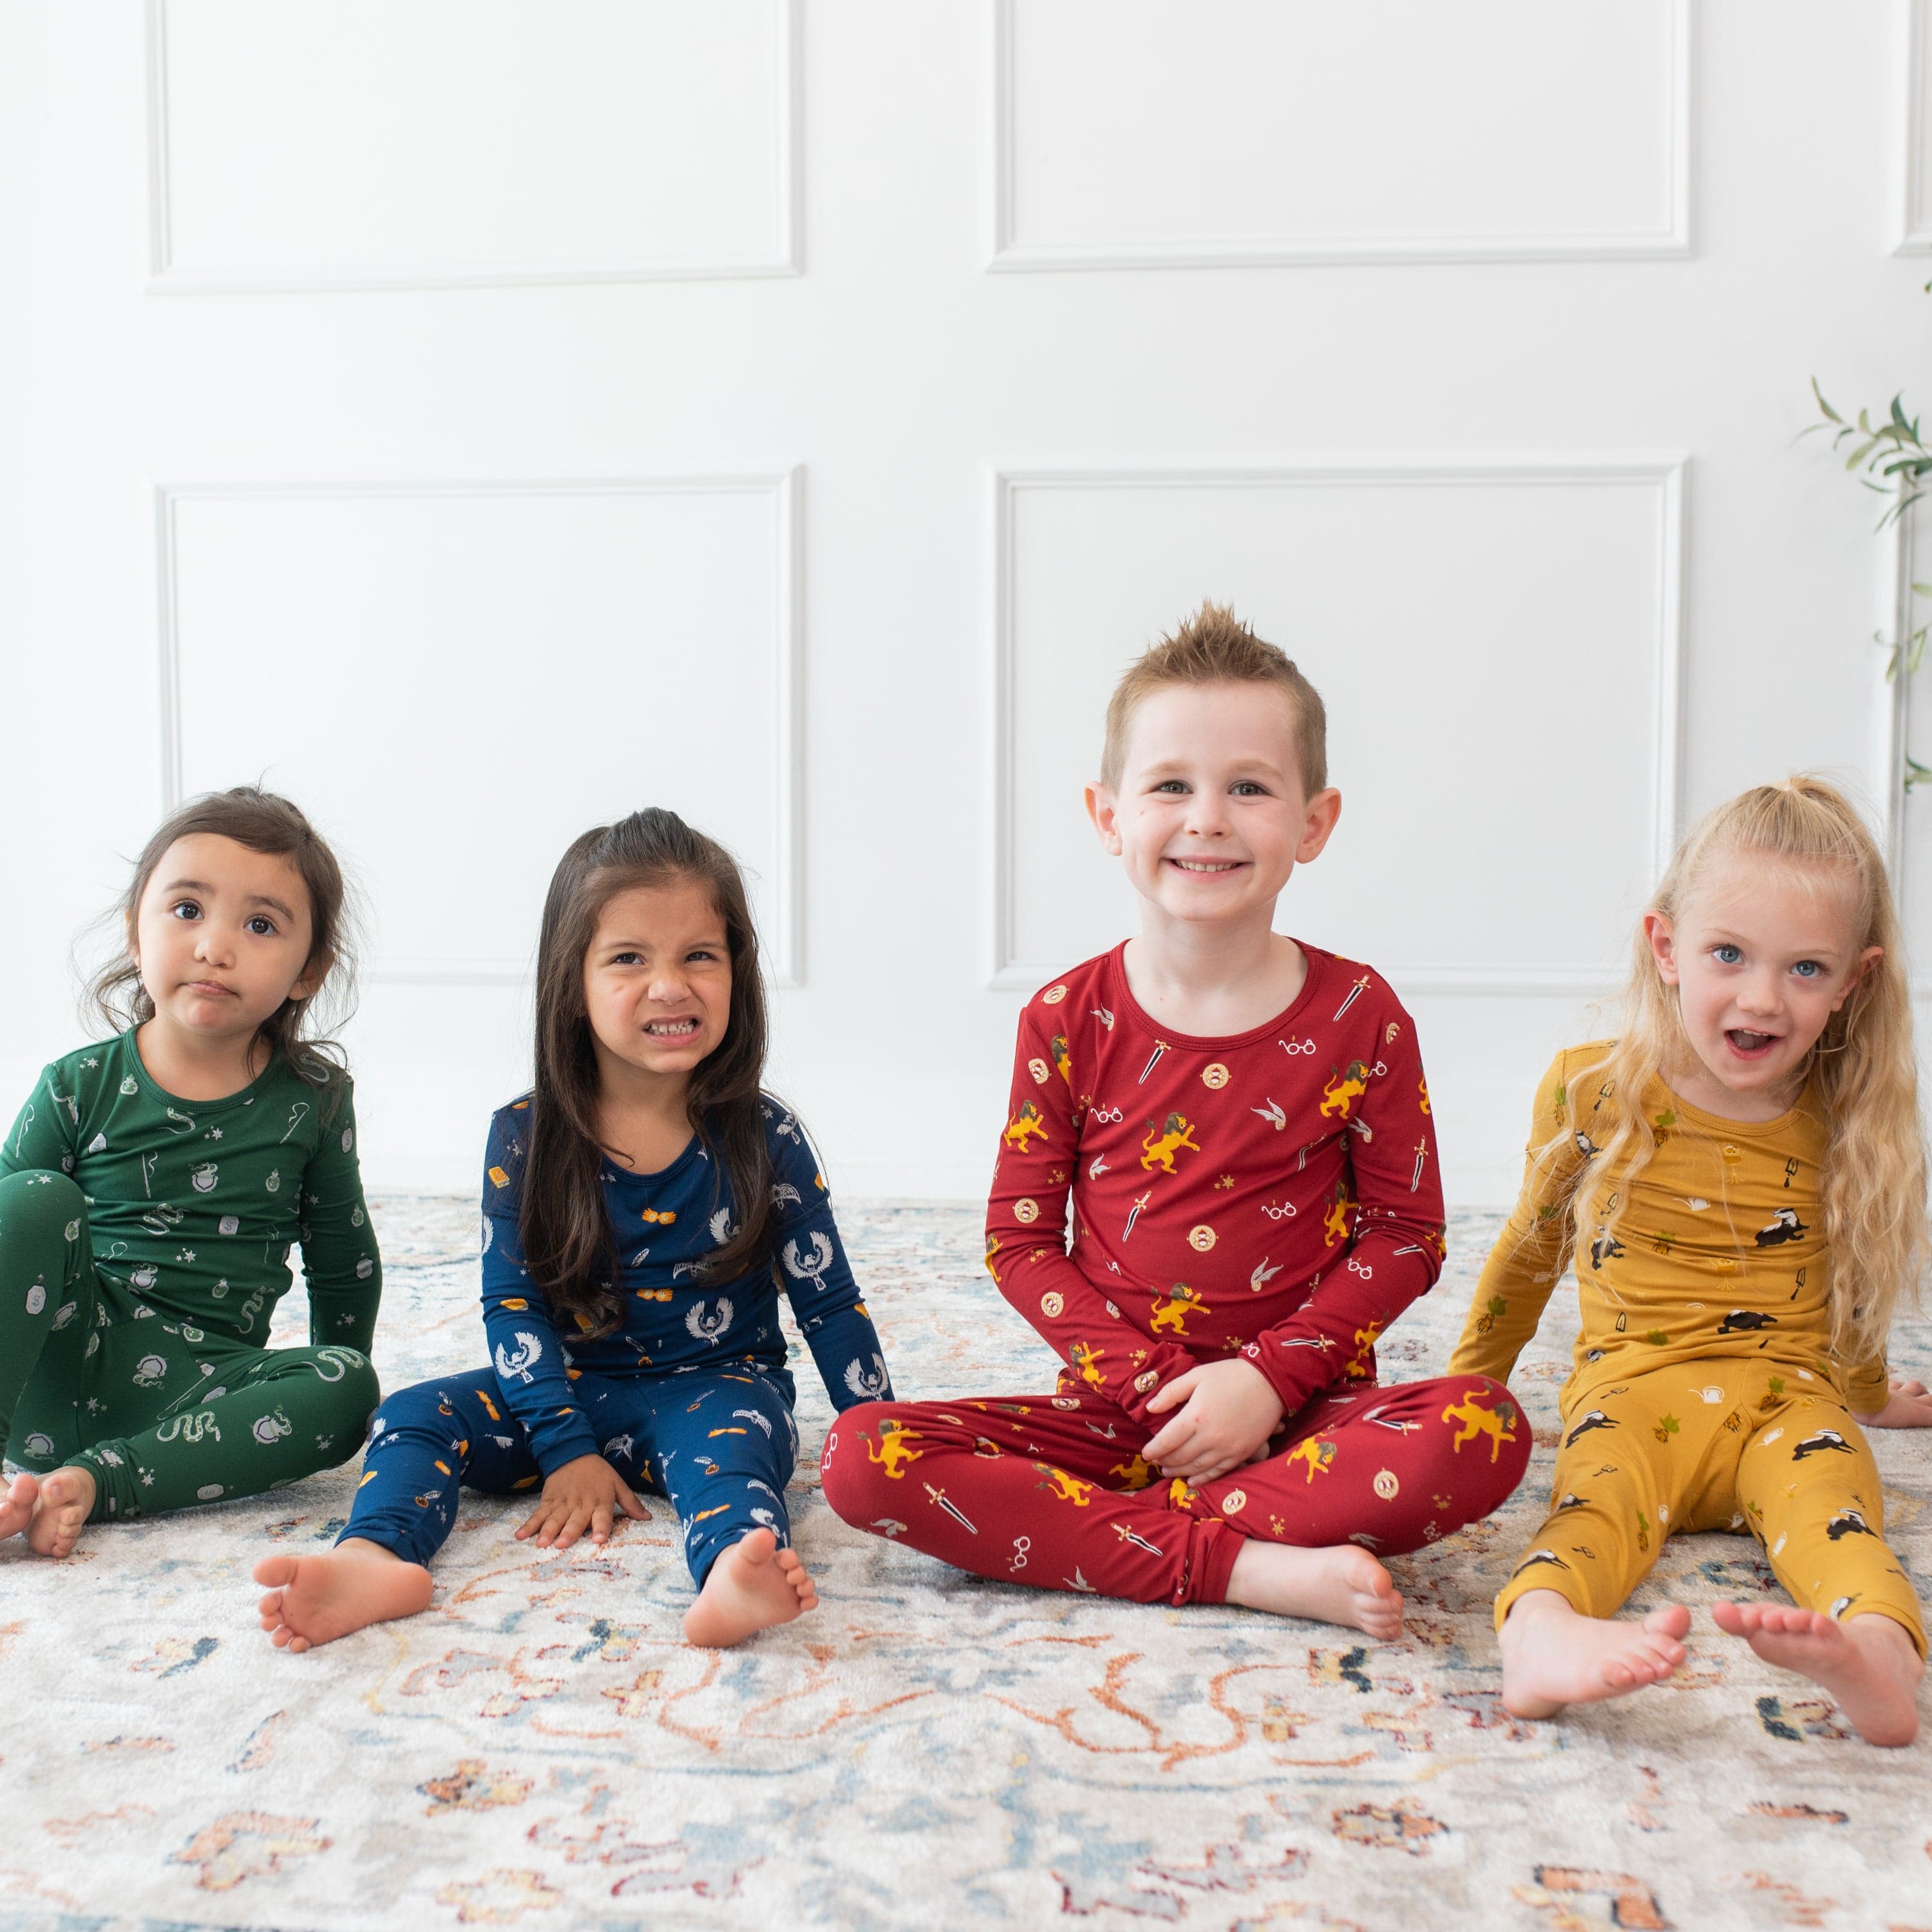 Kyte Baby Toddler Long Sleeve Pajamas Long Sleeve Pajamas in Slytherin™